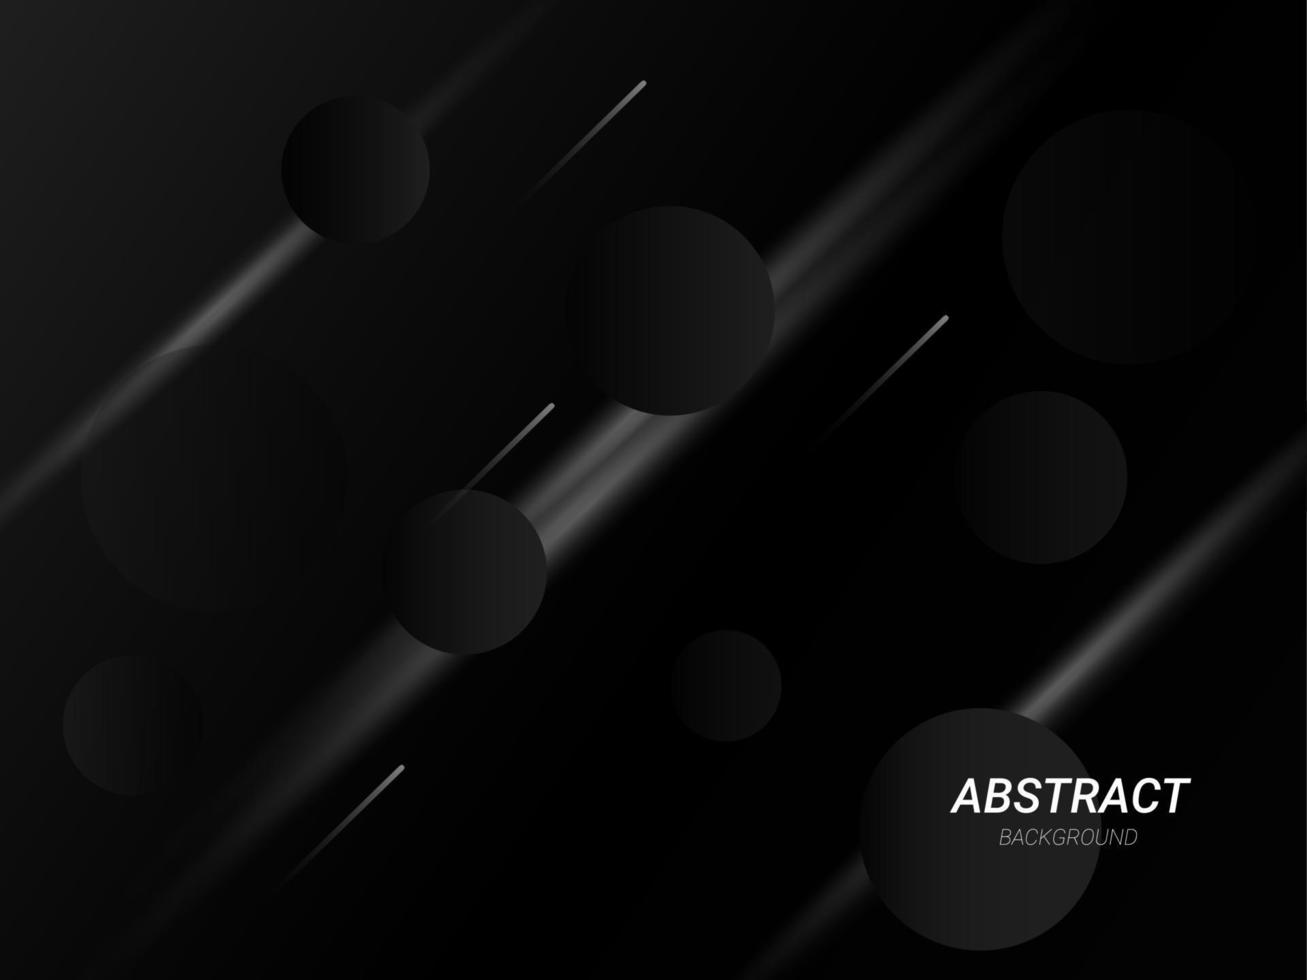 fundo preto geométrico escuro abstrato padrão de design elegante vetor